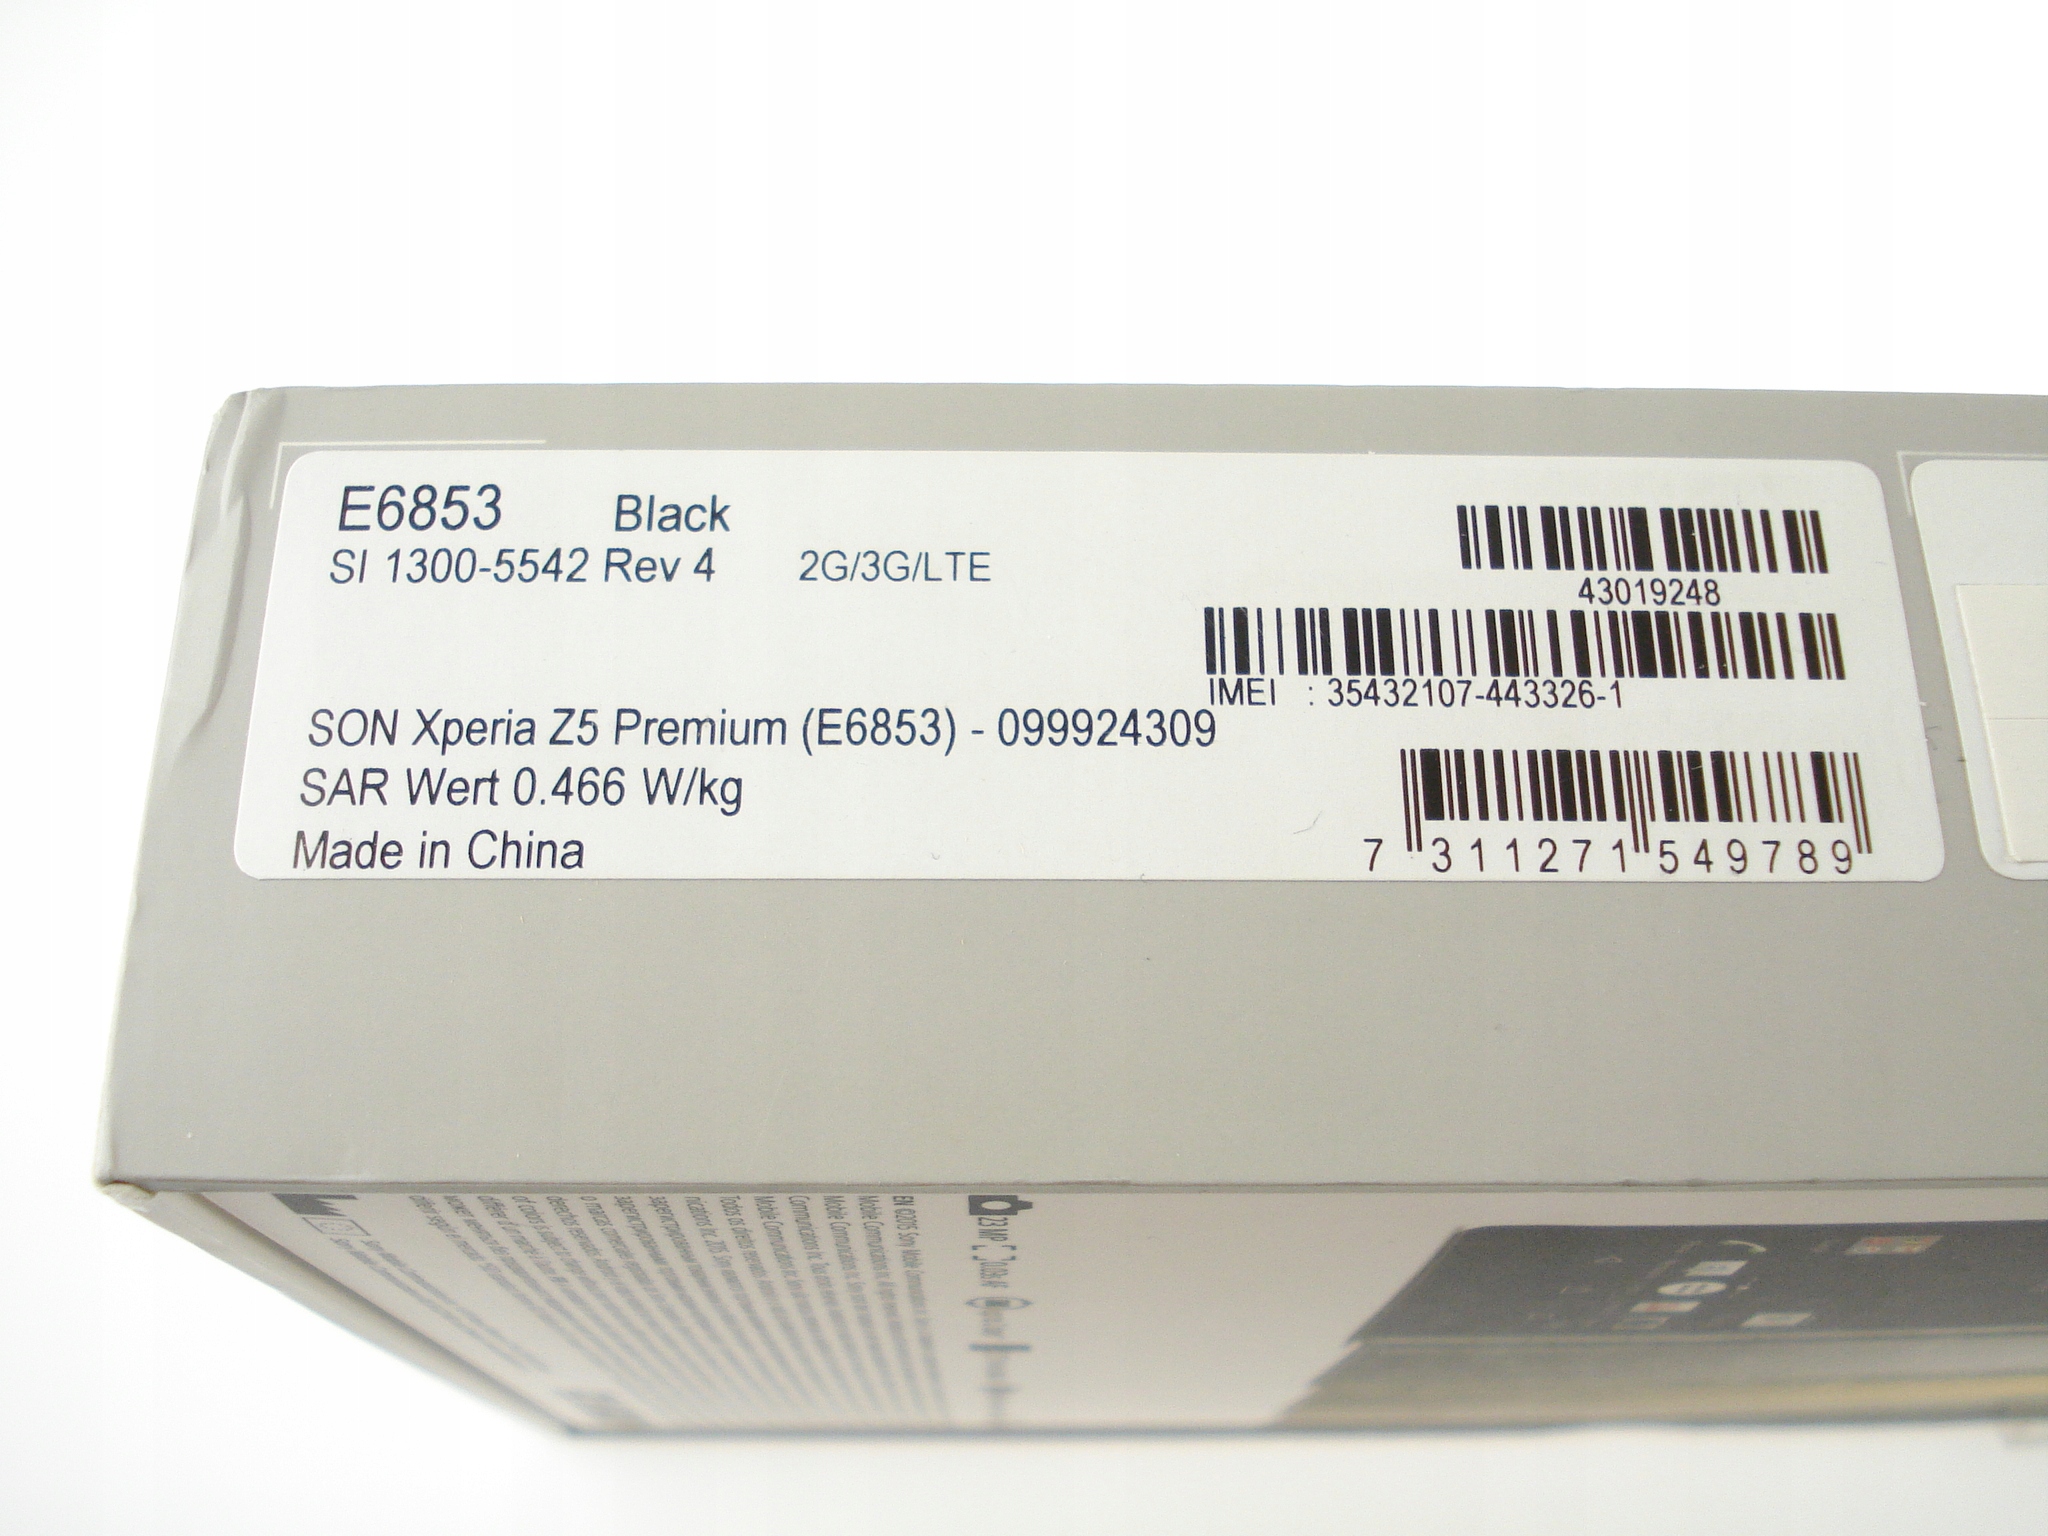 100% новый оригинальный Sony XPERIA Z5 премиум E6853 черный EAN 7311271549789